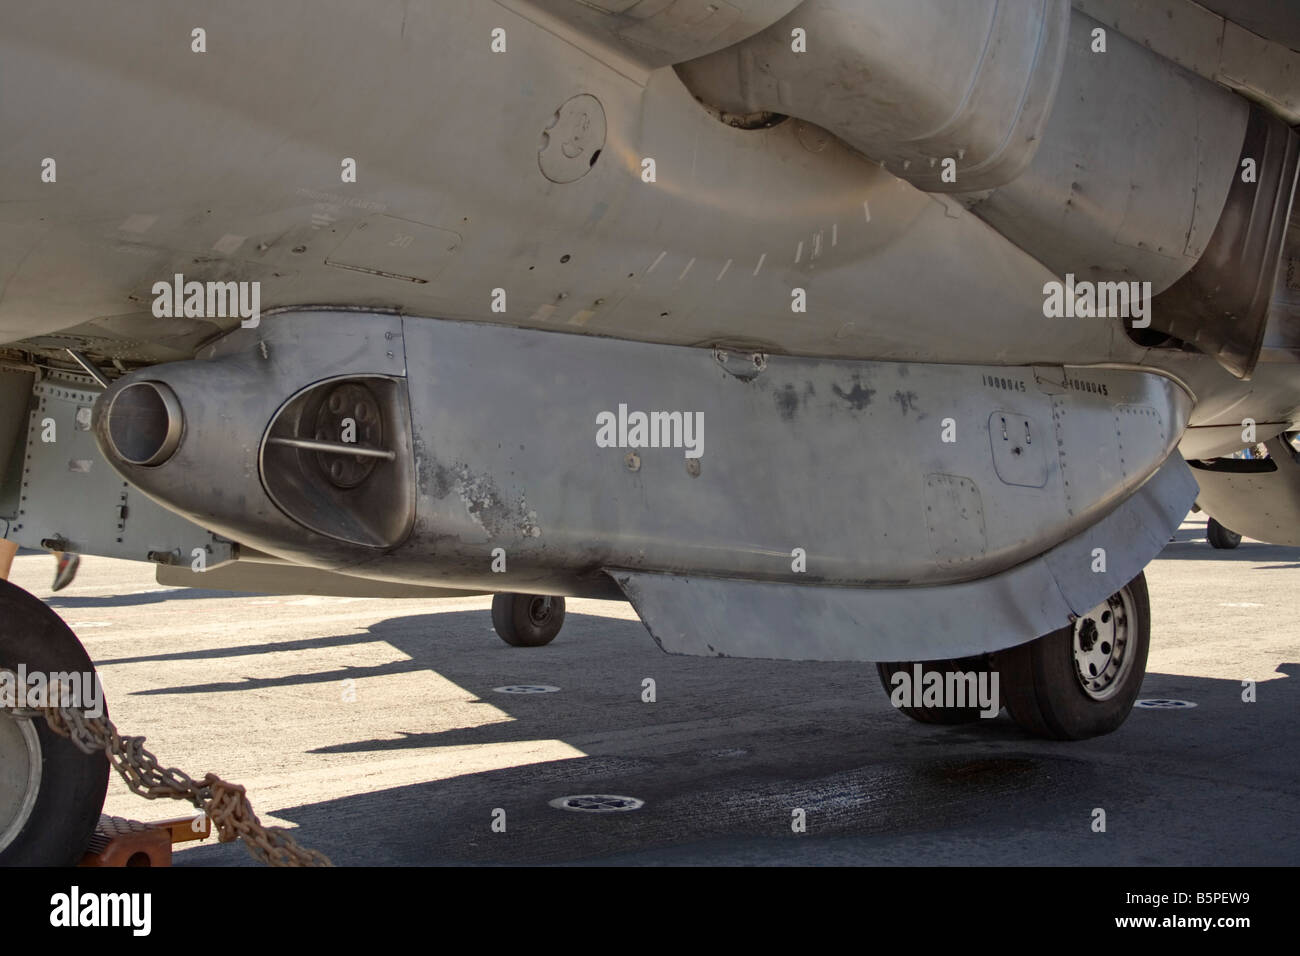 25mm pod cannone montato al di sotto della fusoliera di un US Marine Corps AV-8B Harrier jet militare fighter. Foto Stock